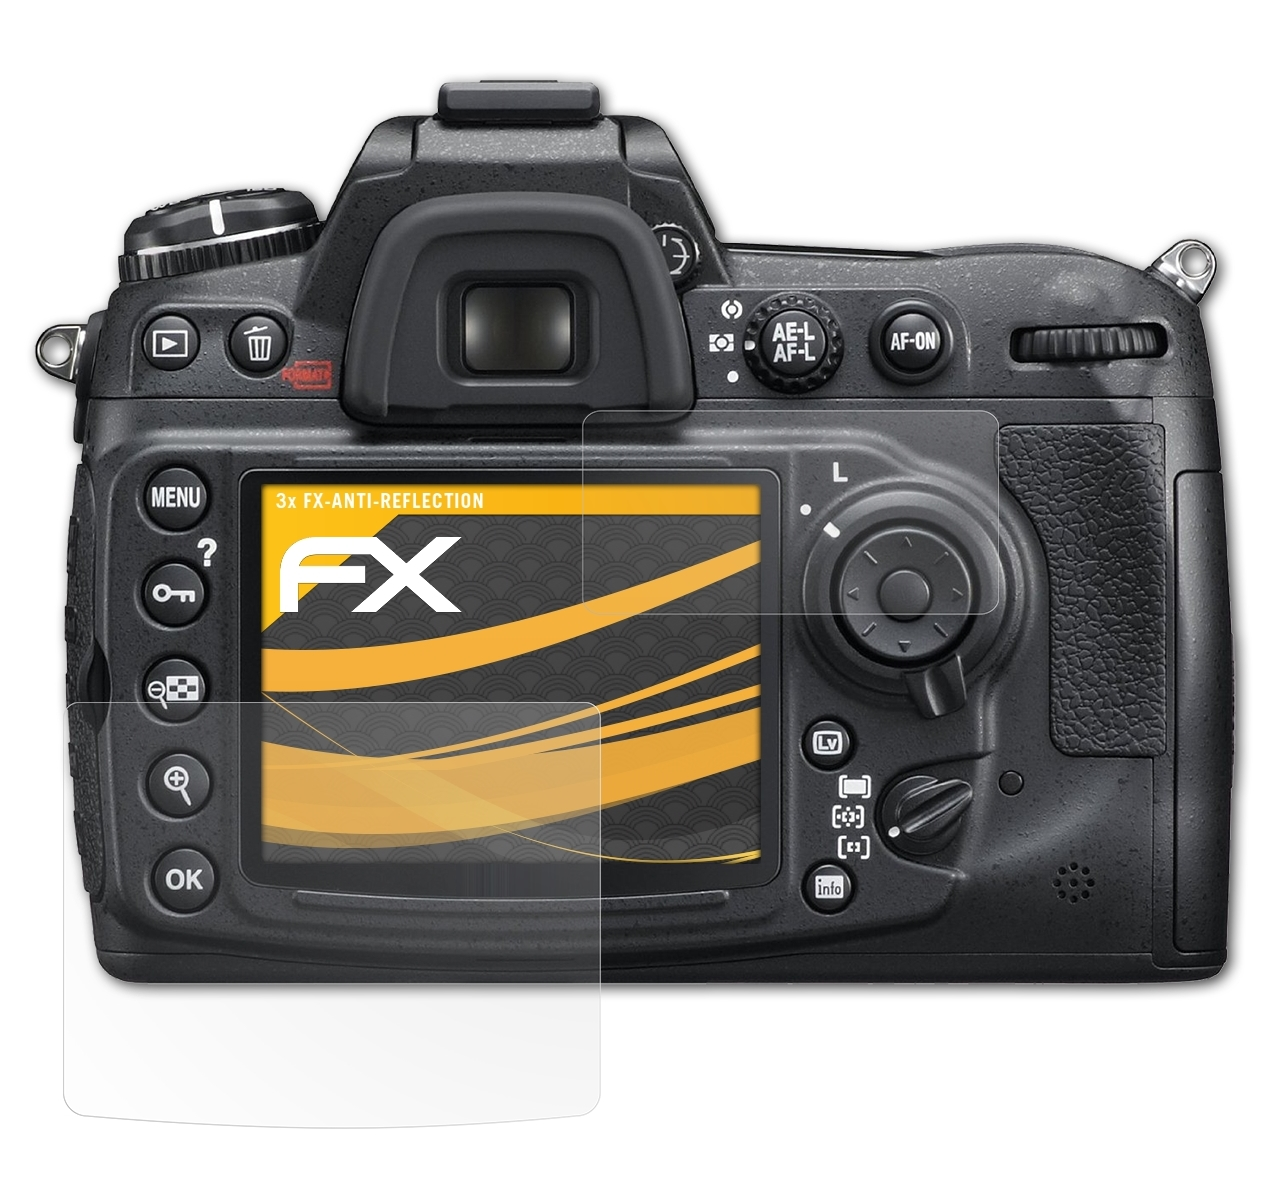 ATFOLIX 3x FX-Antireflex Nikon Displayschutz(für D300)